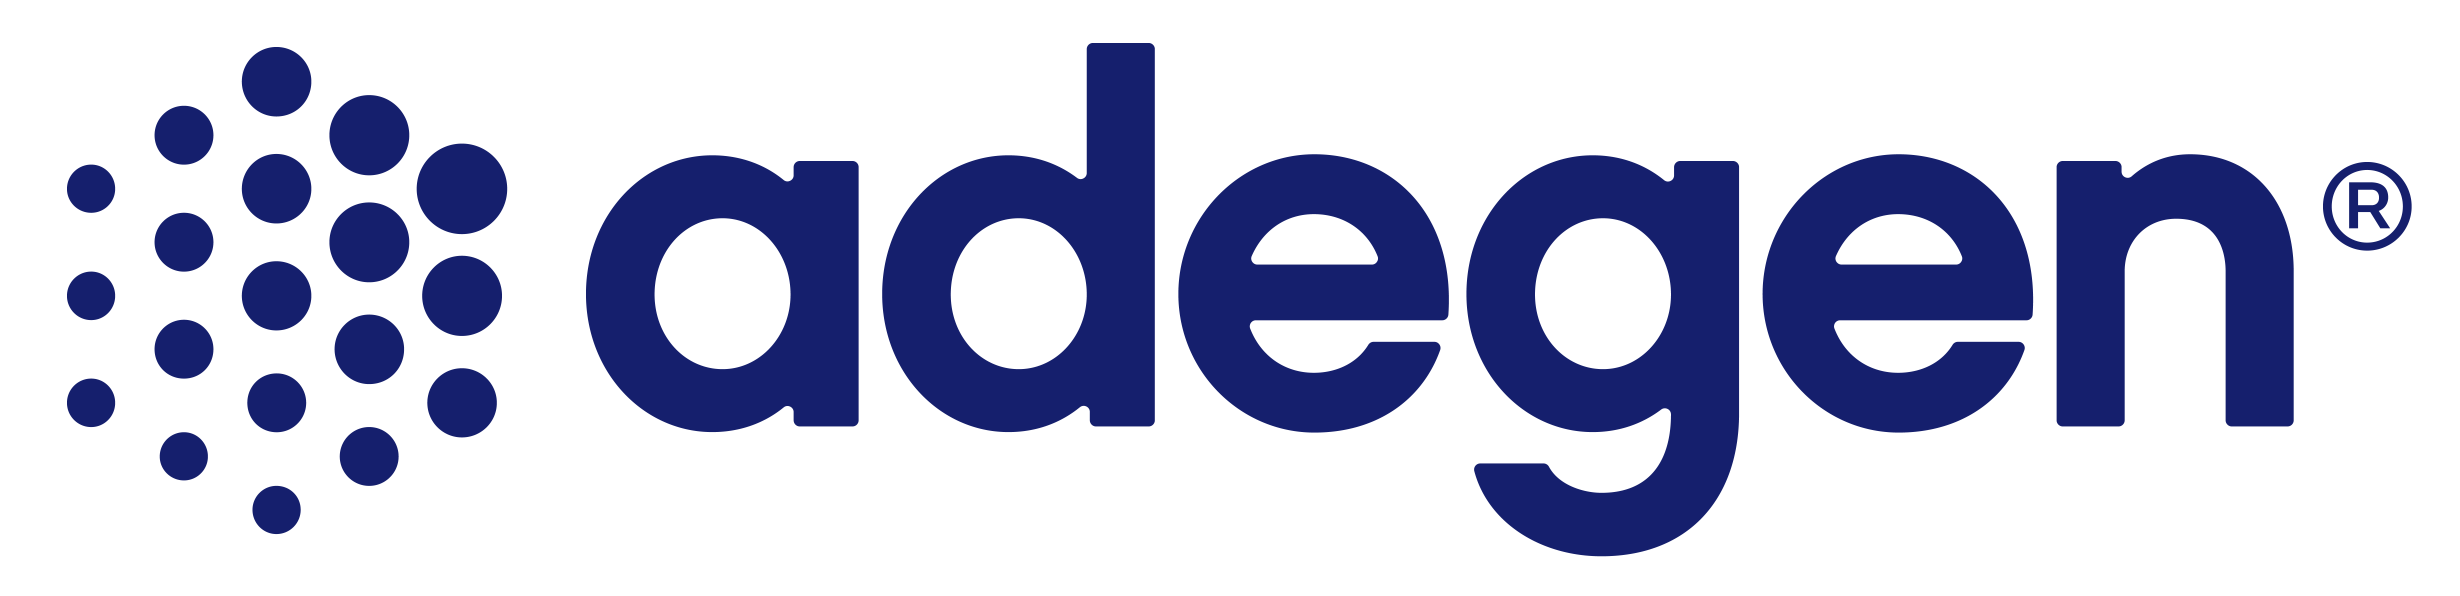 Adegen logo